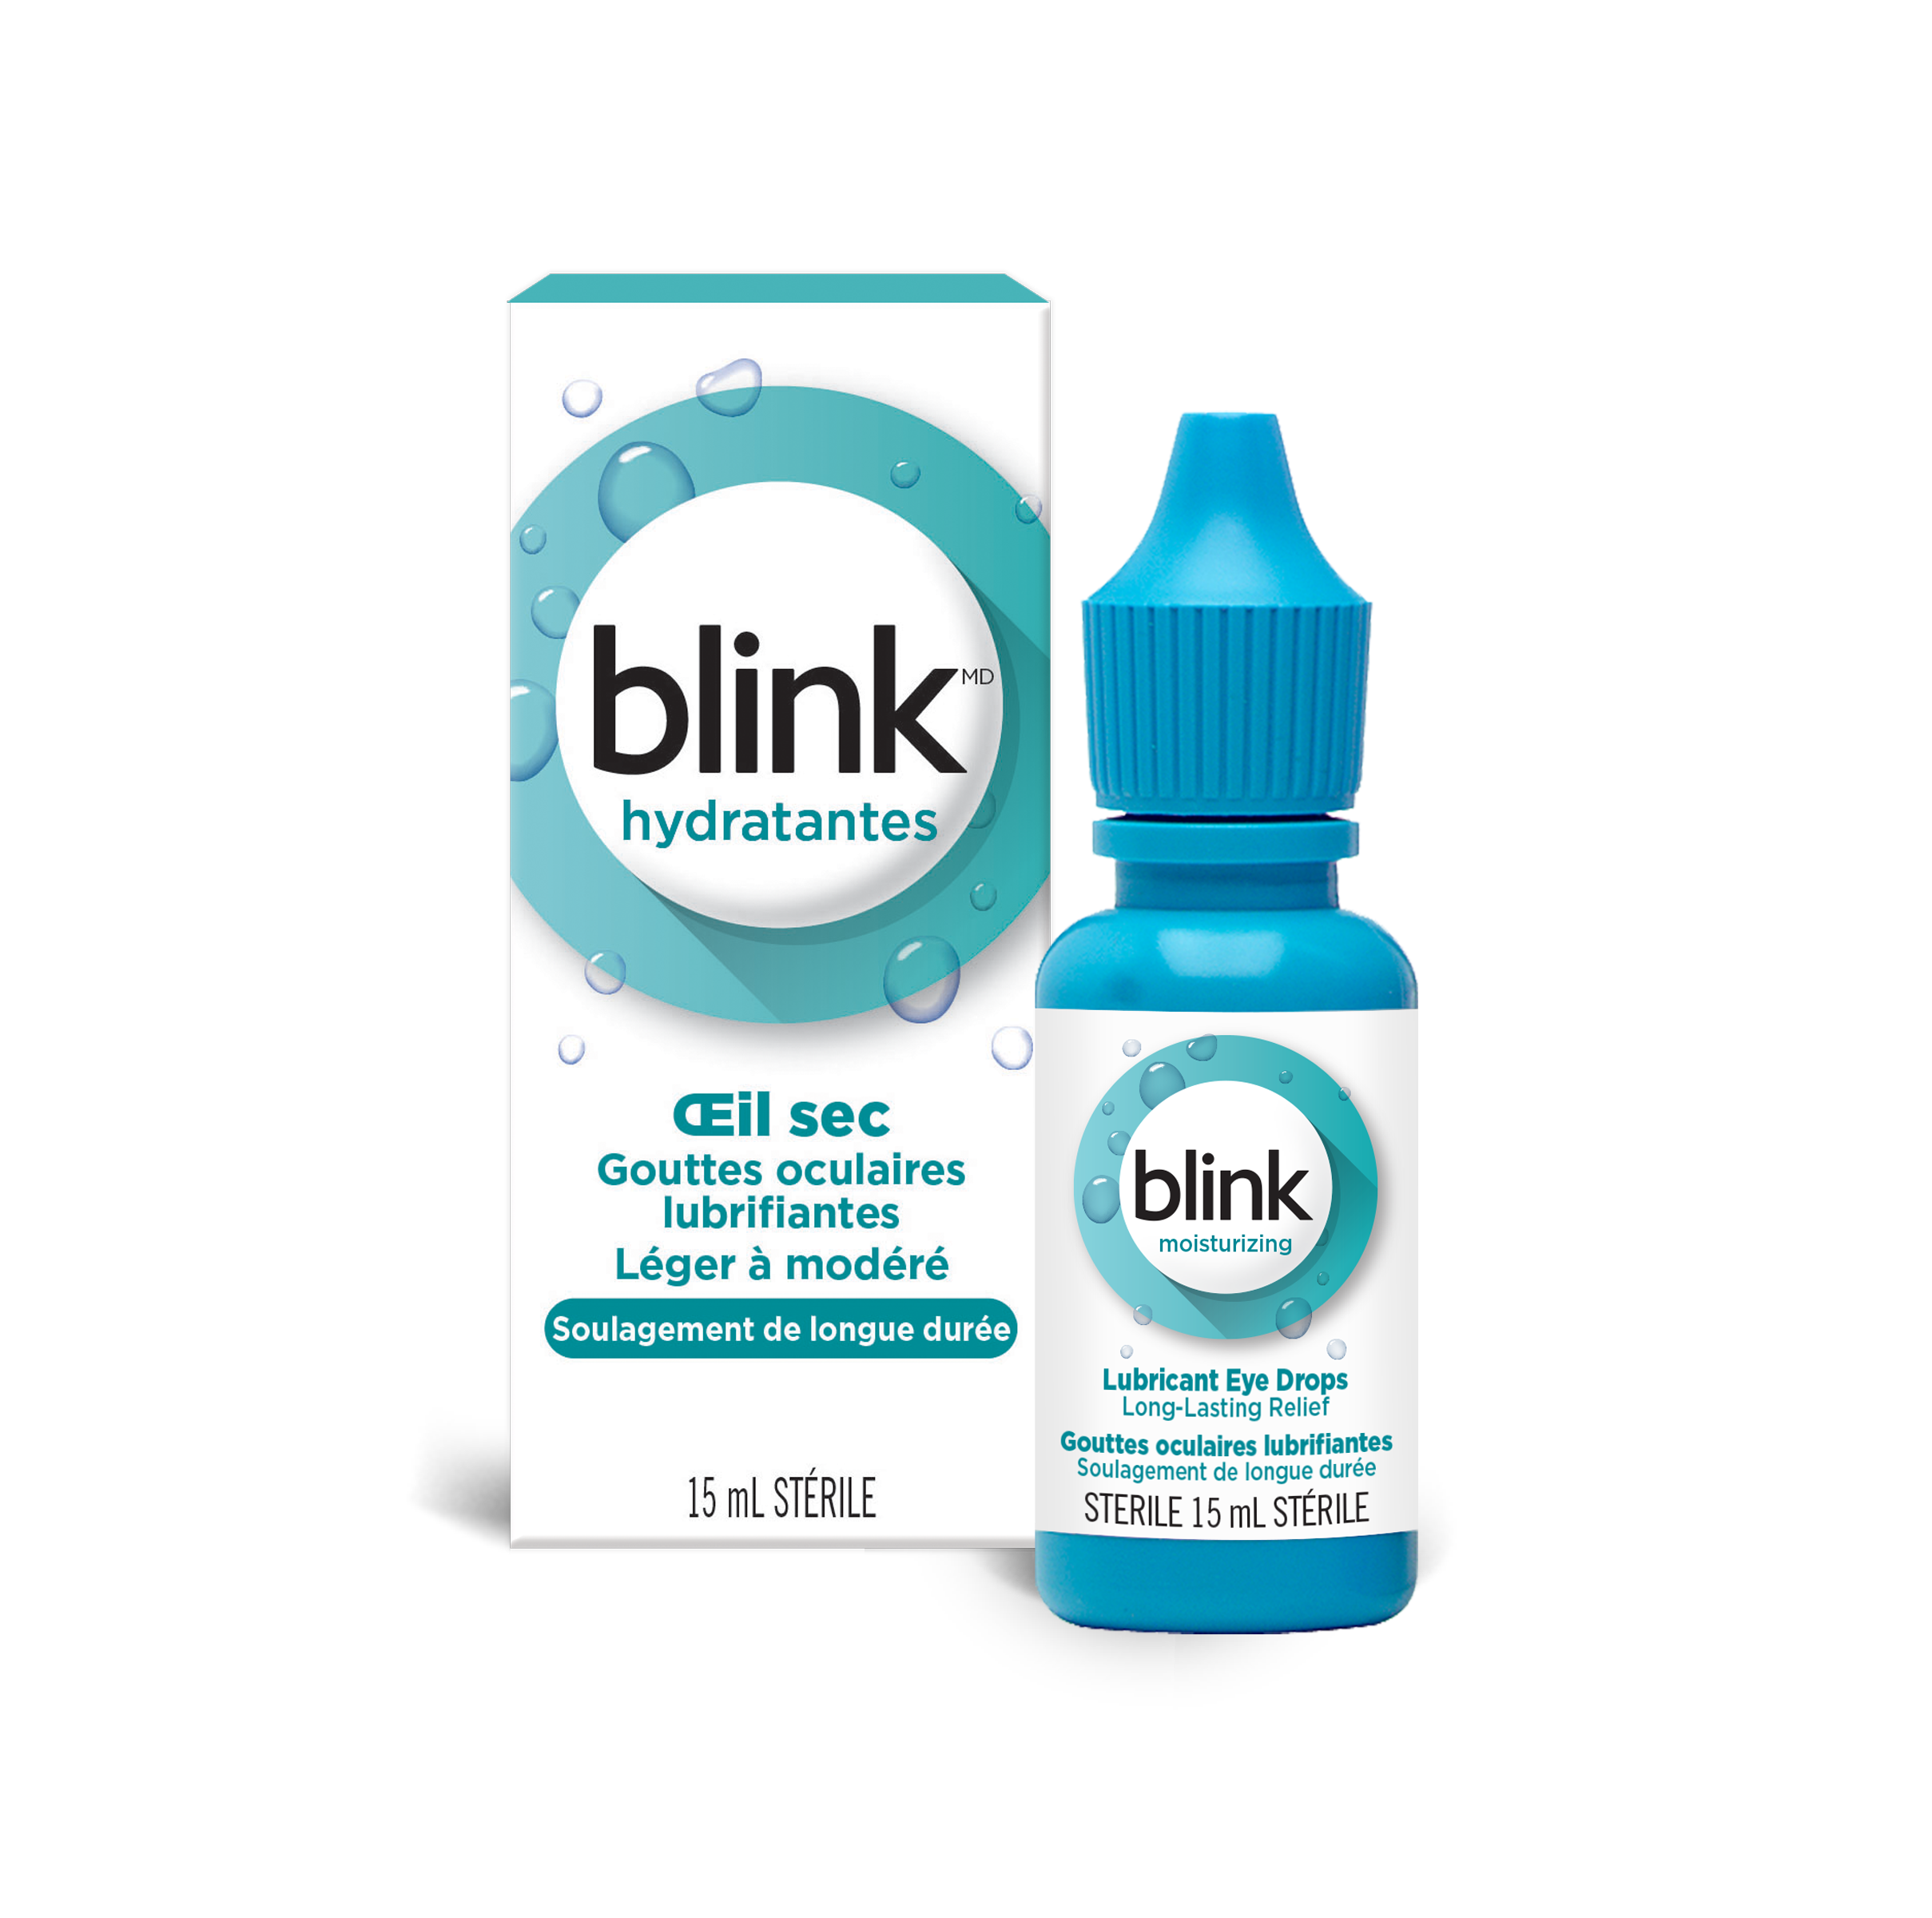 Blink moisturizing